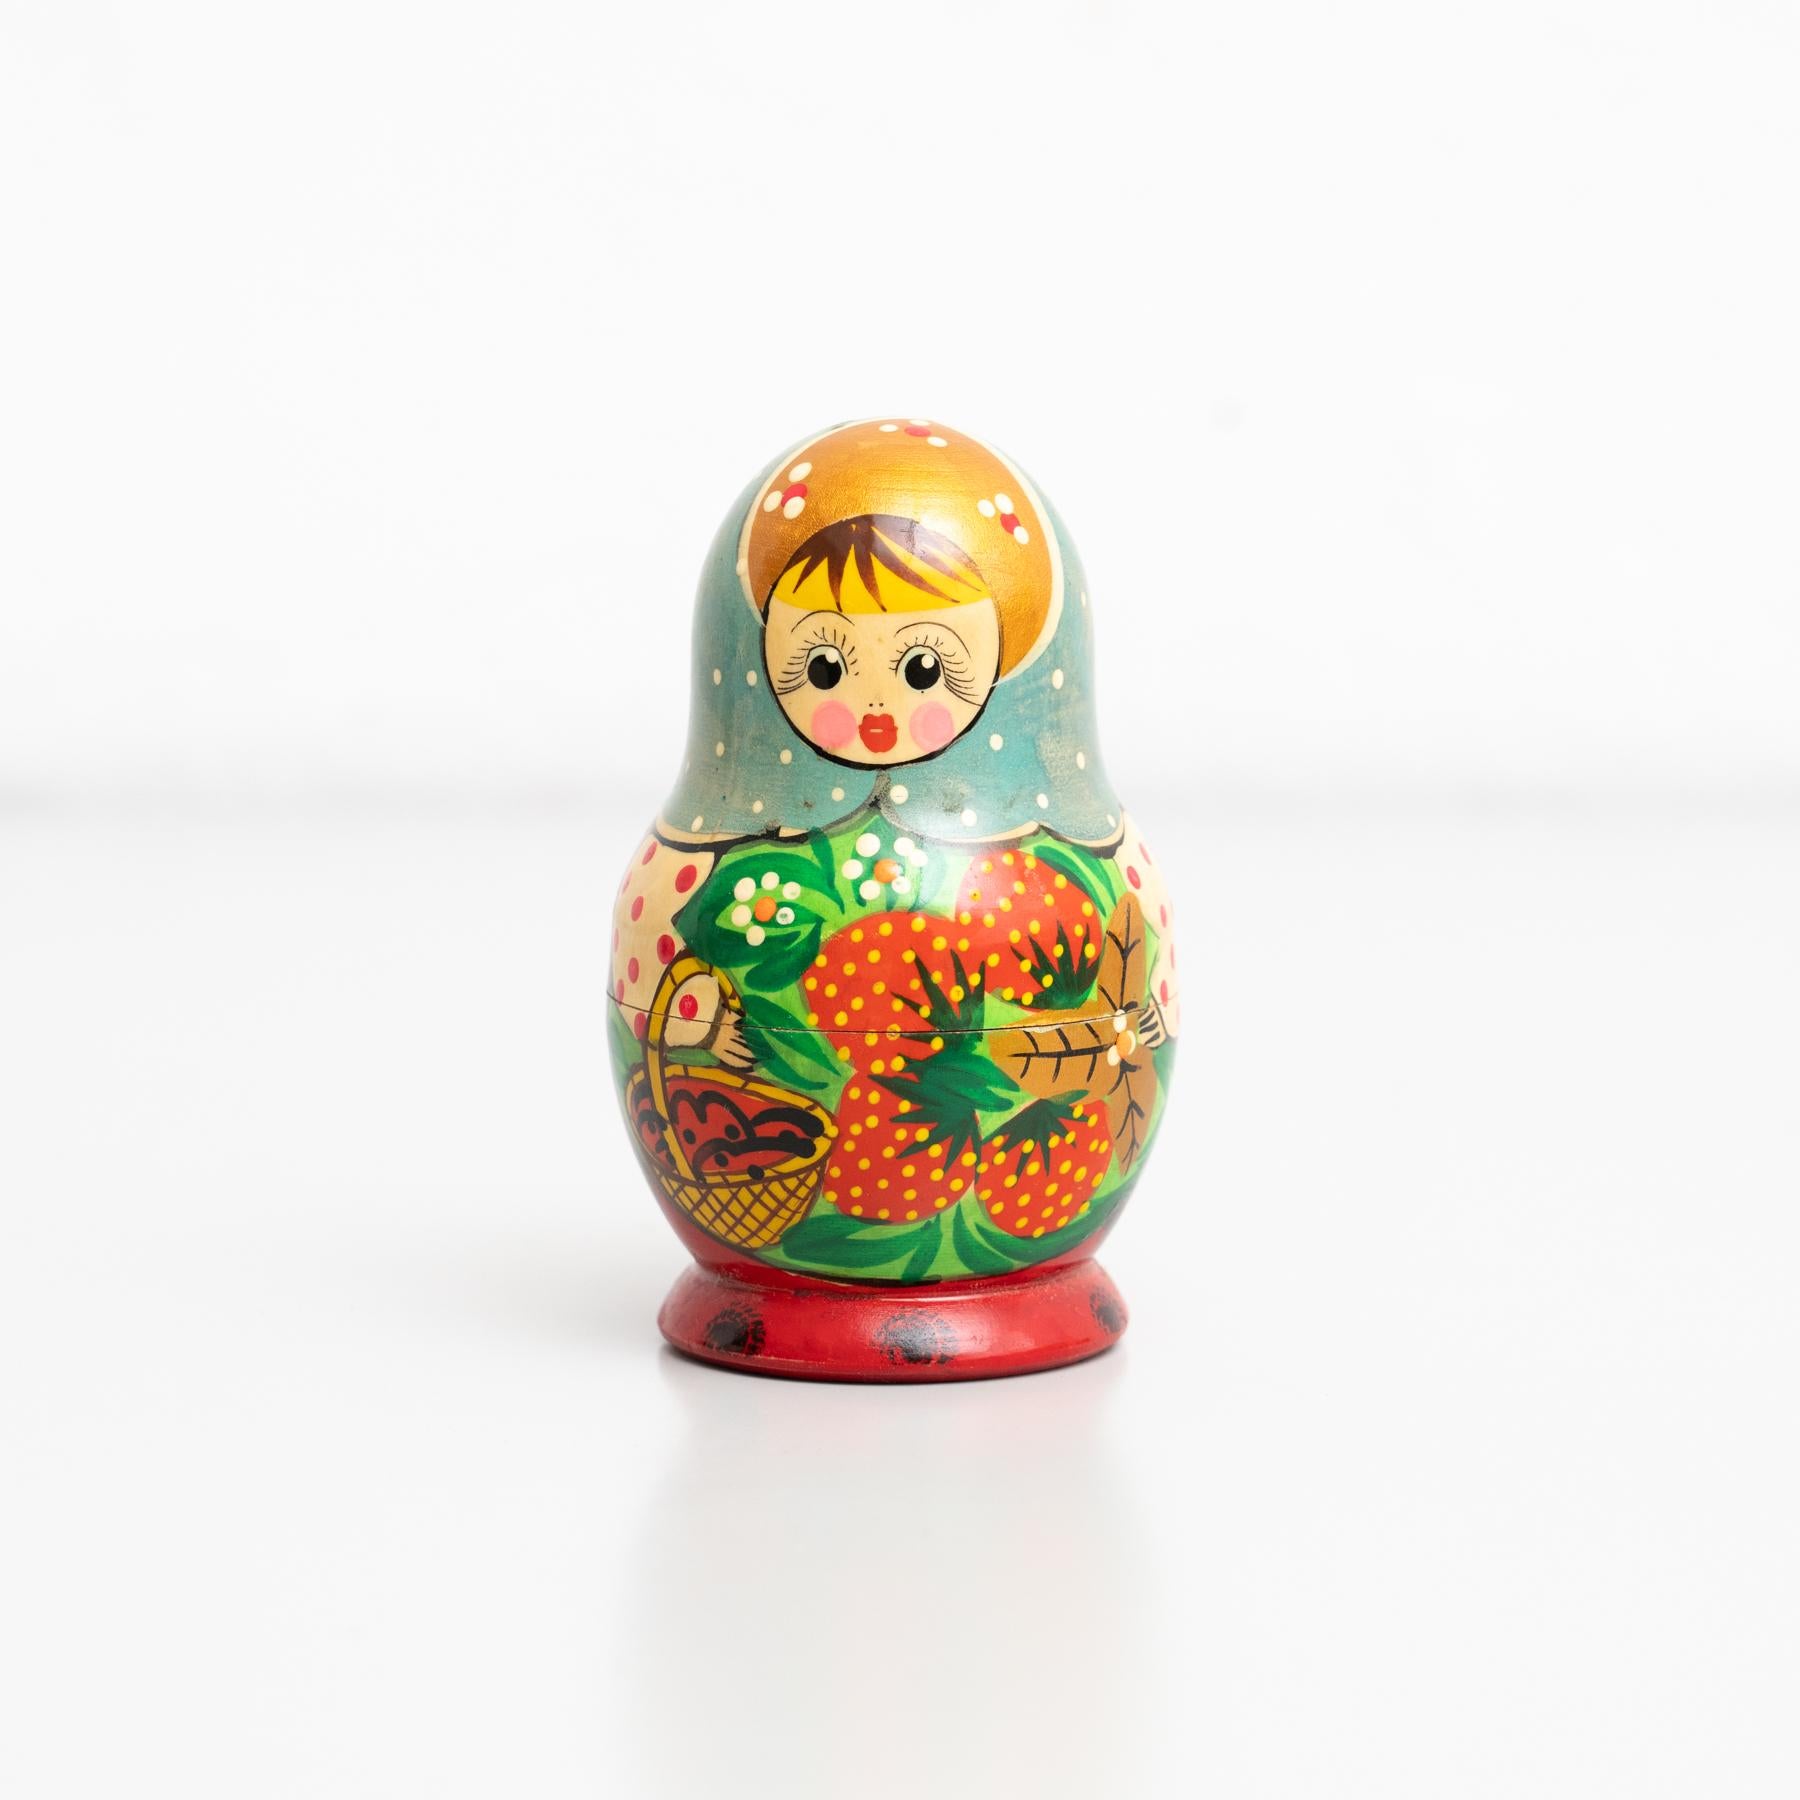 Traditionelle russische 'Matrioska'-Puppe, Holzfigur. Handbemalt.

Hergestellt von einem unbekannten Hersteller in Russland, ca. 1960.

Originaler Zustand mit geringen alters- und gebrauchsbedingten Abnutzungserscheinungen, der eine schöne